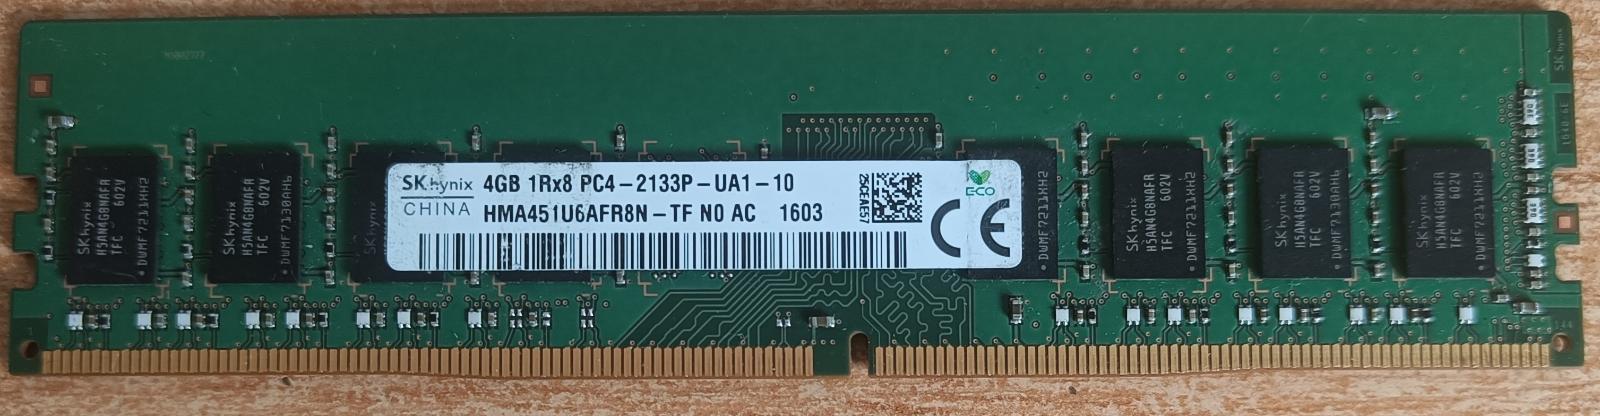 4GB RAM DDR4 pro PC zn. Hynix PC4-2133P-UA1-10, otestováno - Počítače a hry